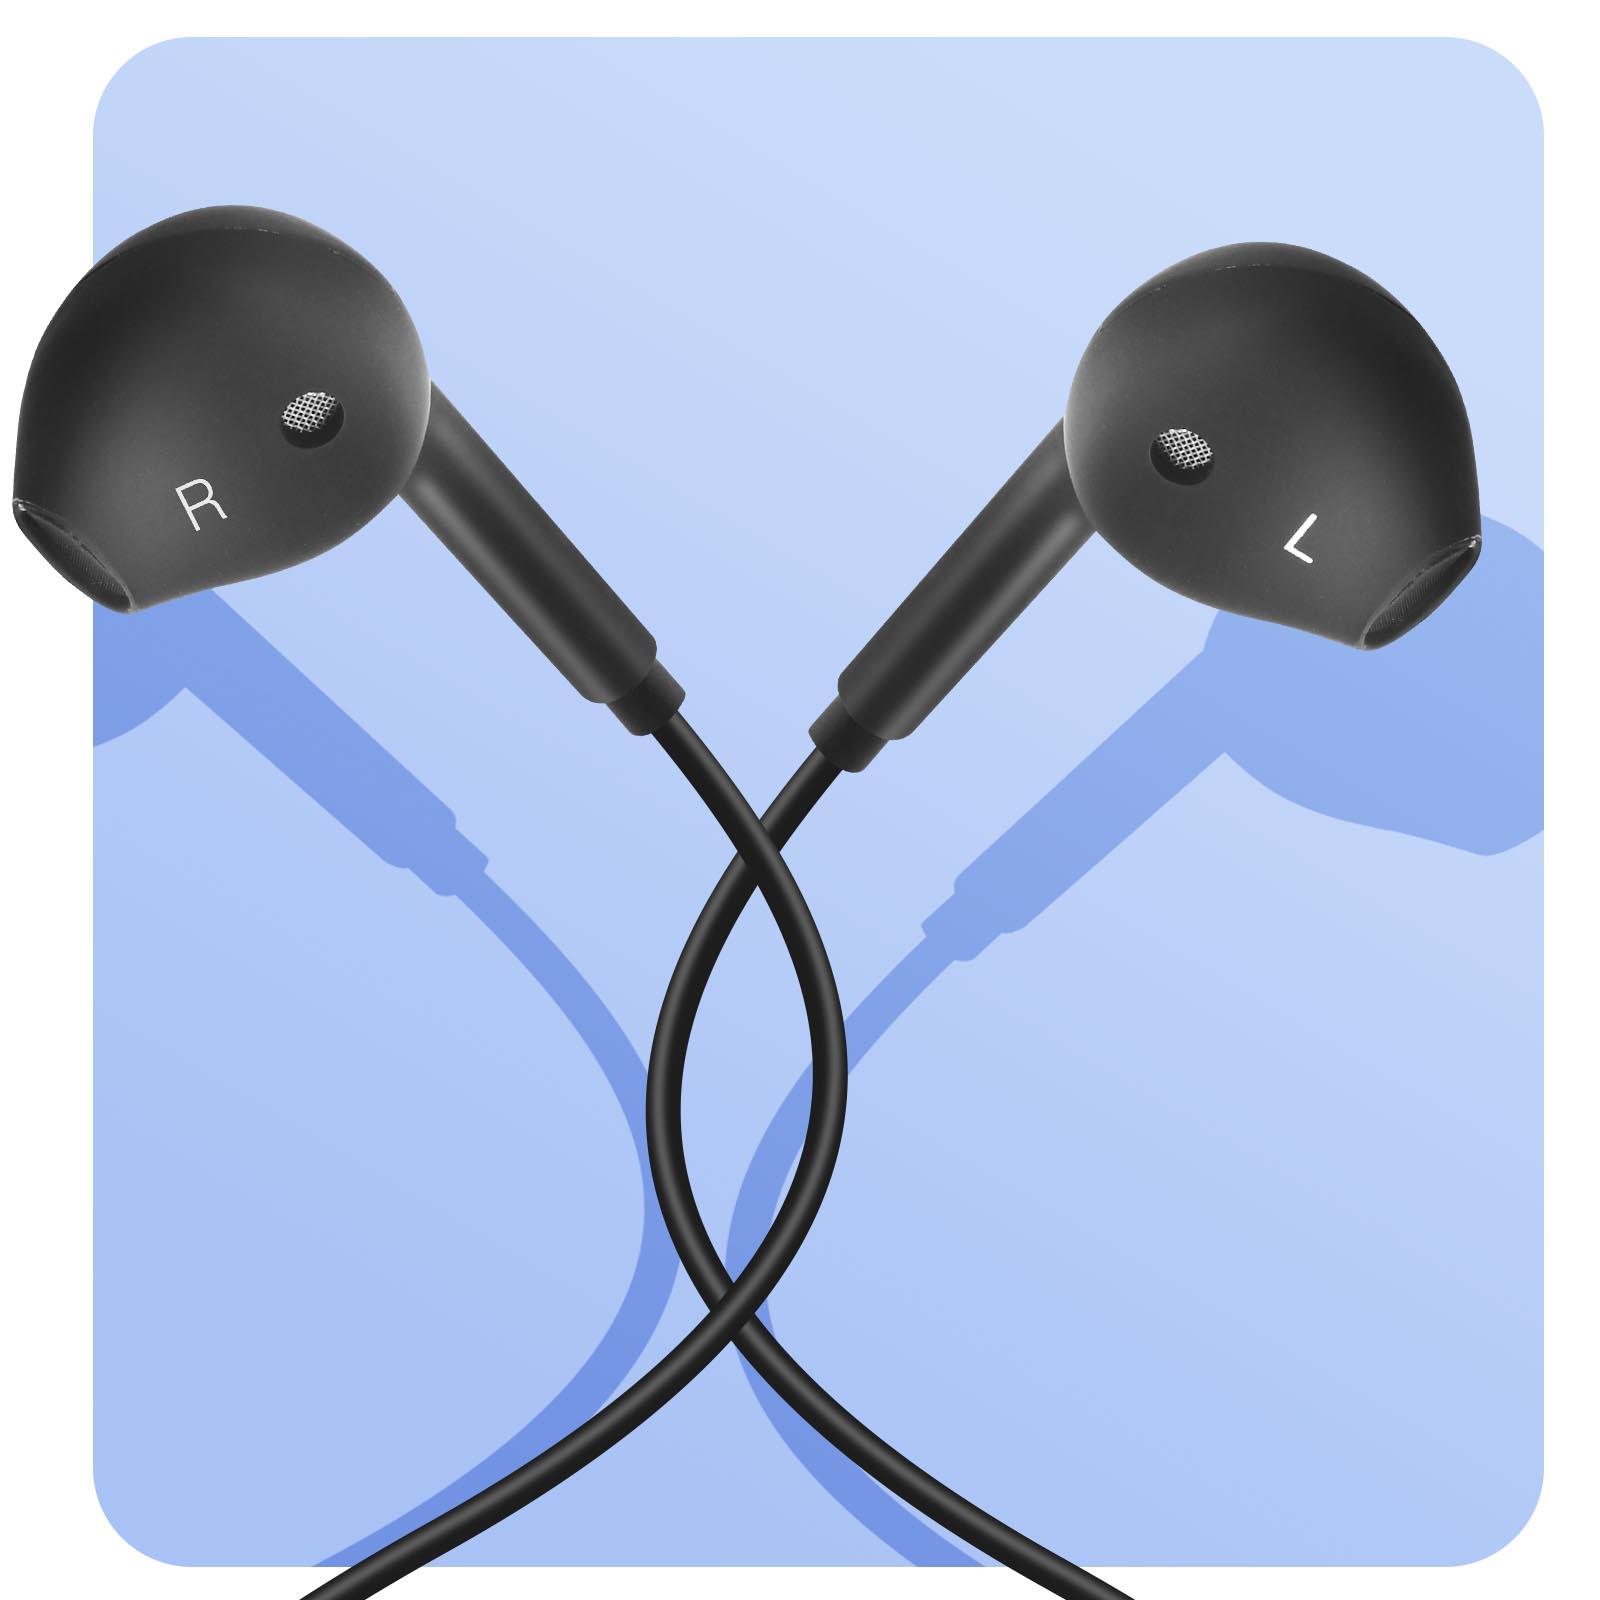 Écouteurs USB-C In-Ear Mega Bass avec microphone (Noir)